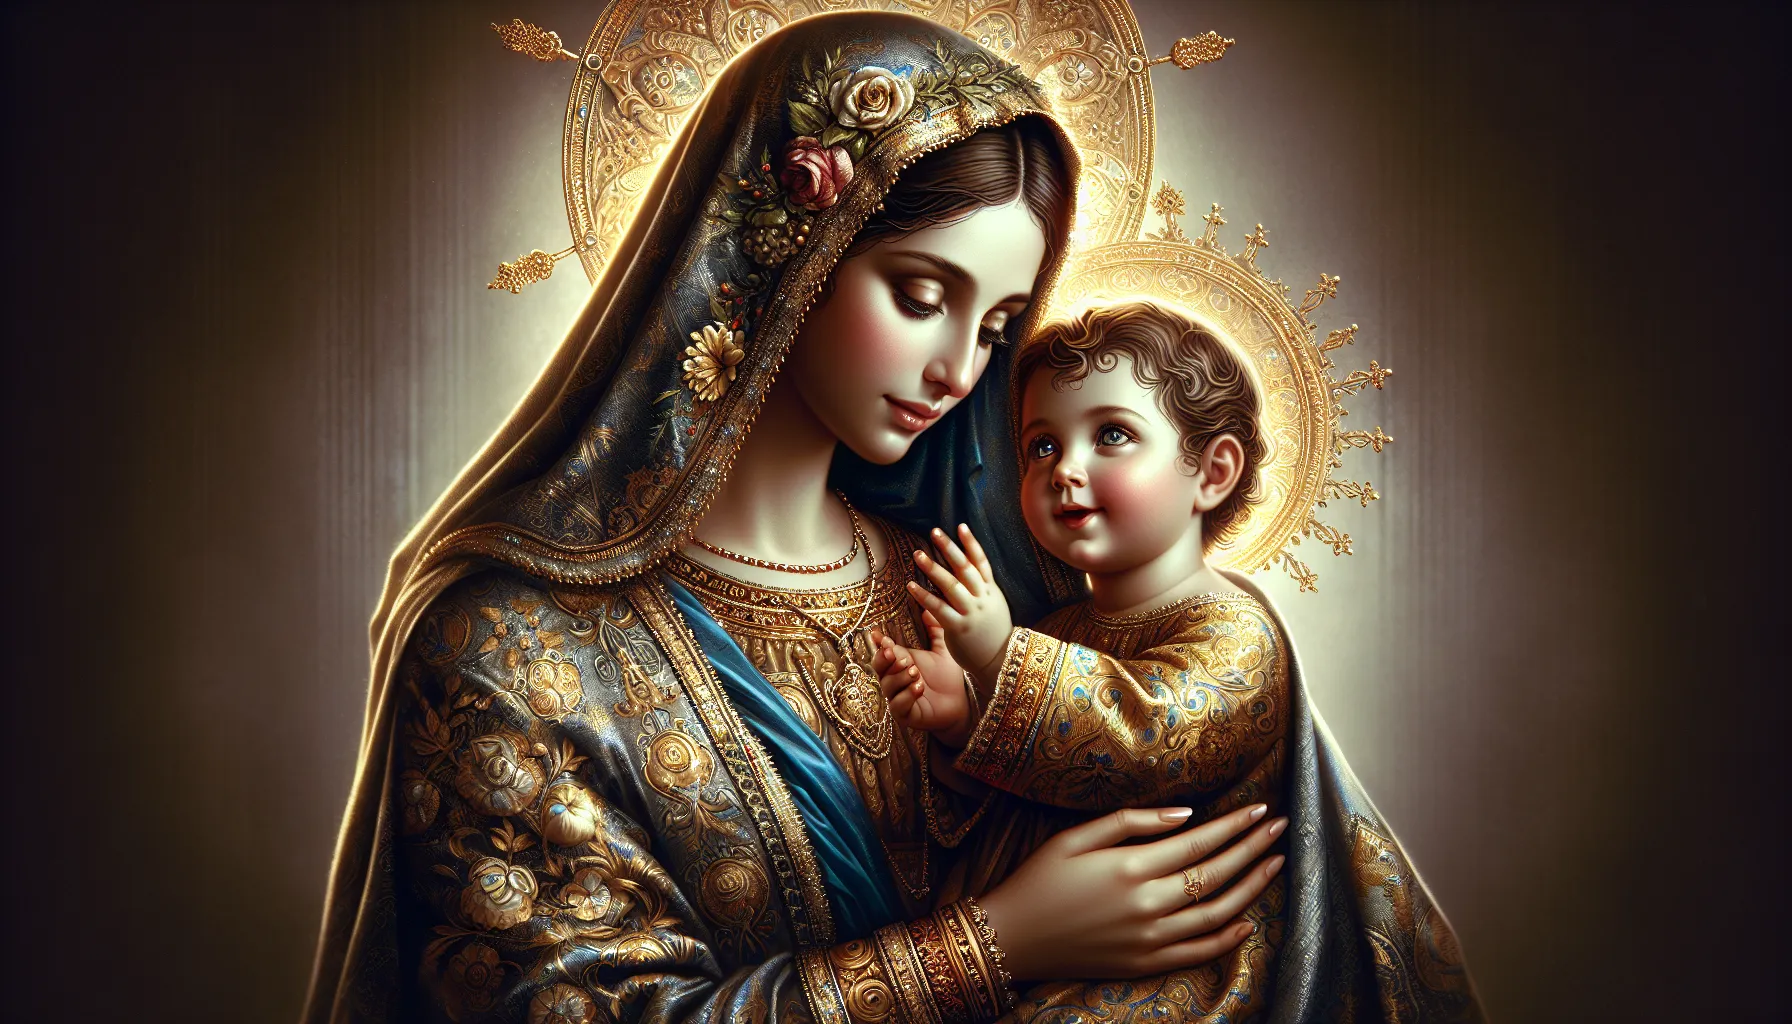 Imagen de la Virgen María sosteniendo al niño Jesús en sus brazos